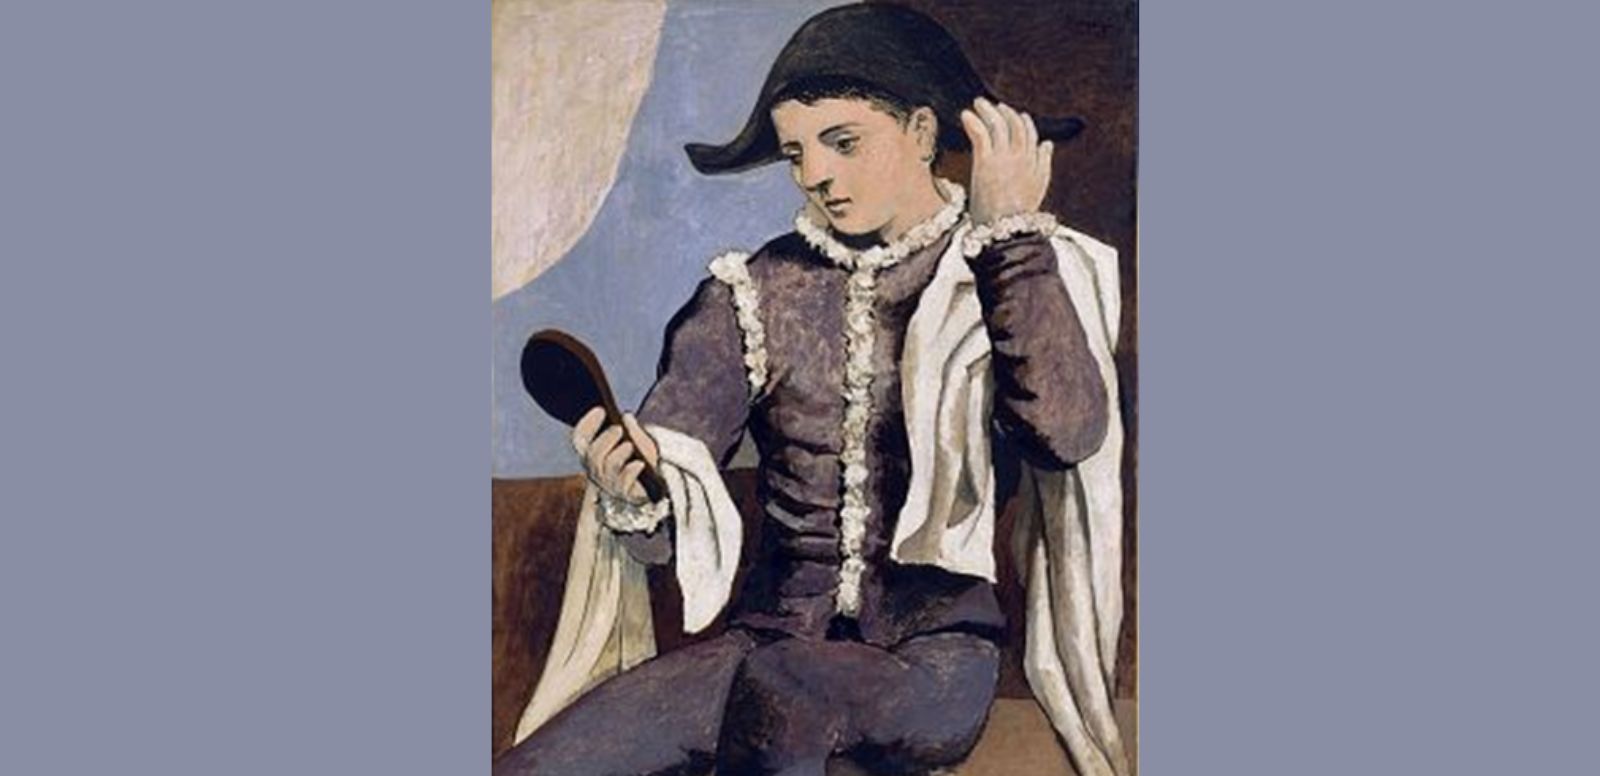 Pablo Picasso, “Arlequín con espejo”, 1923